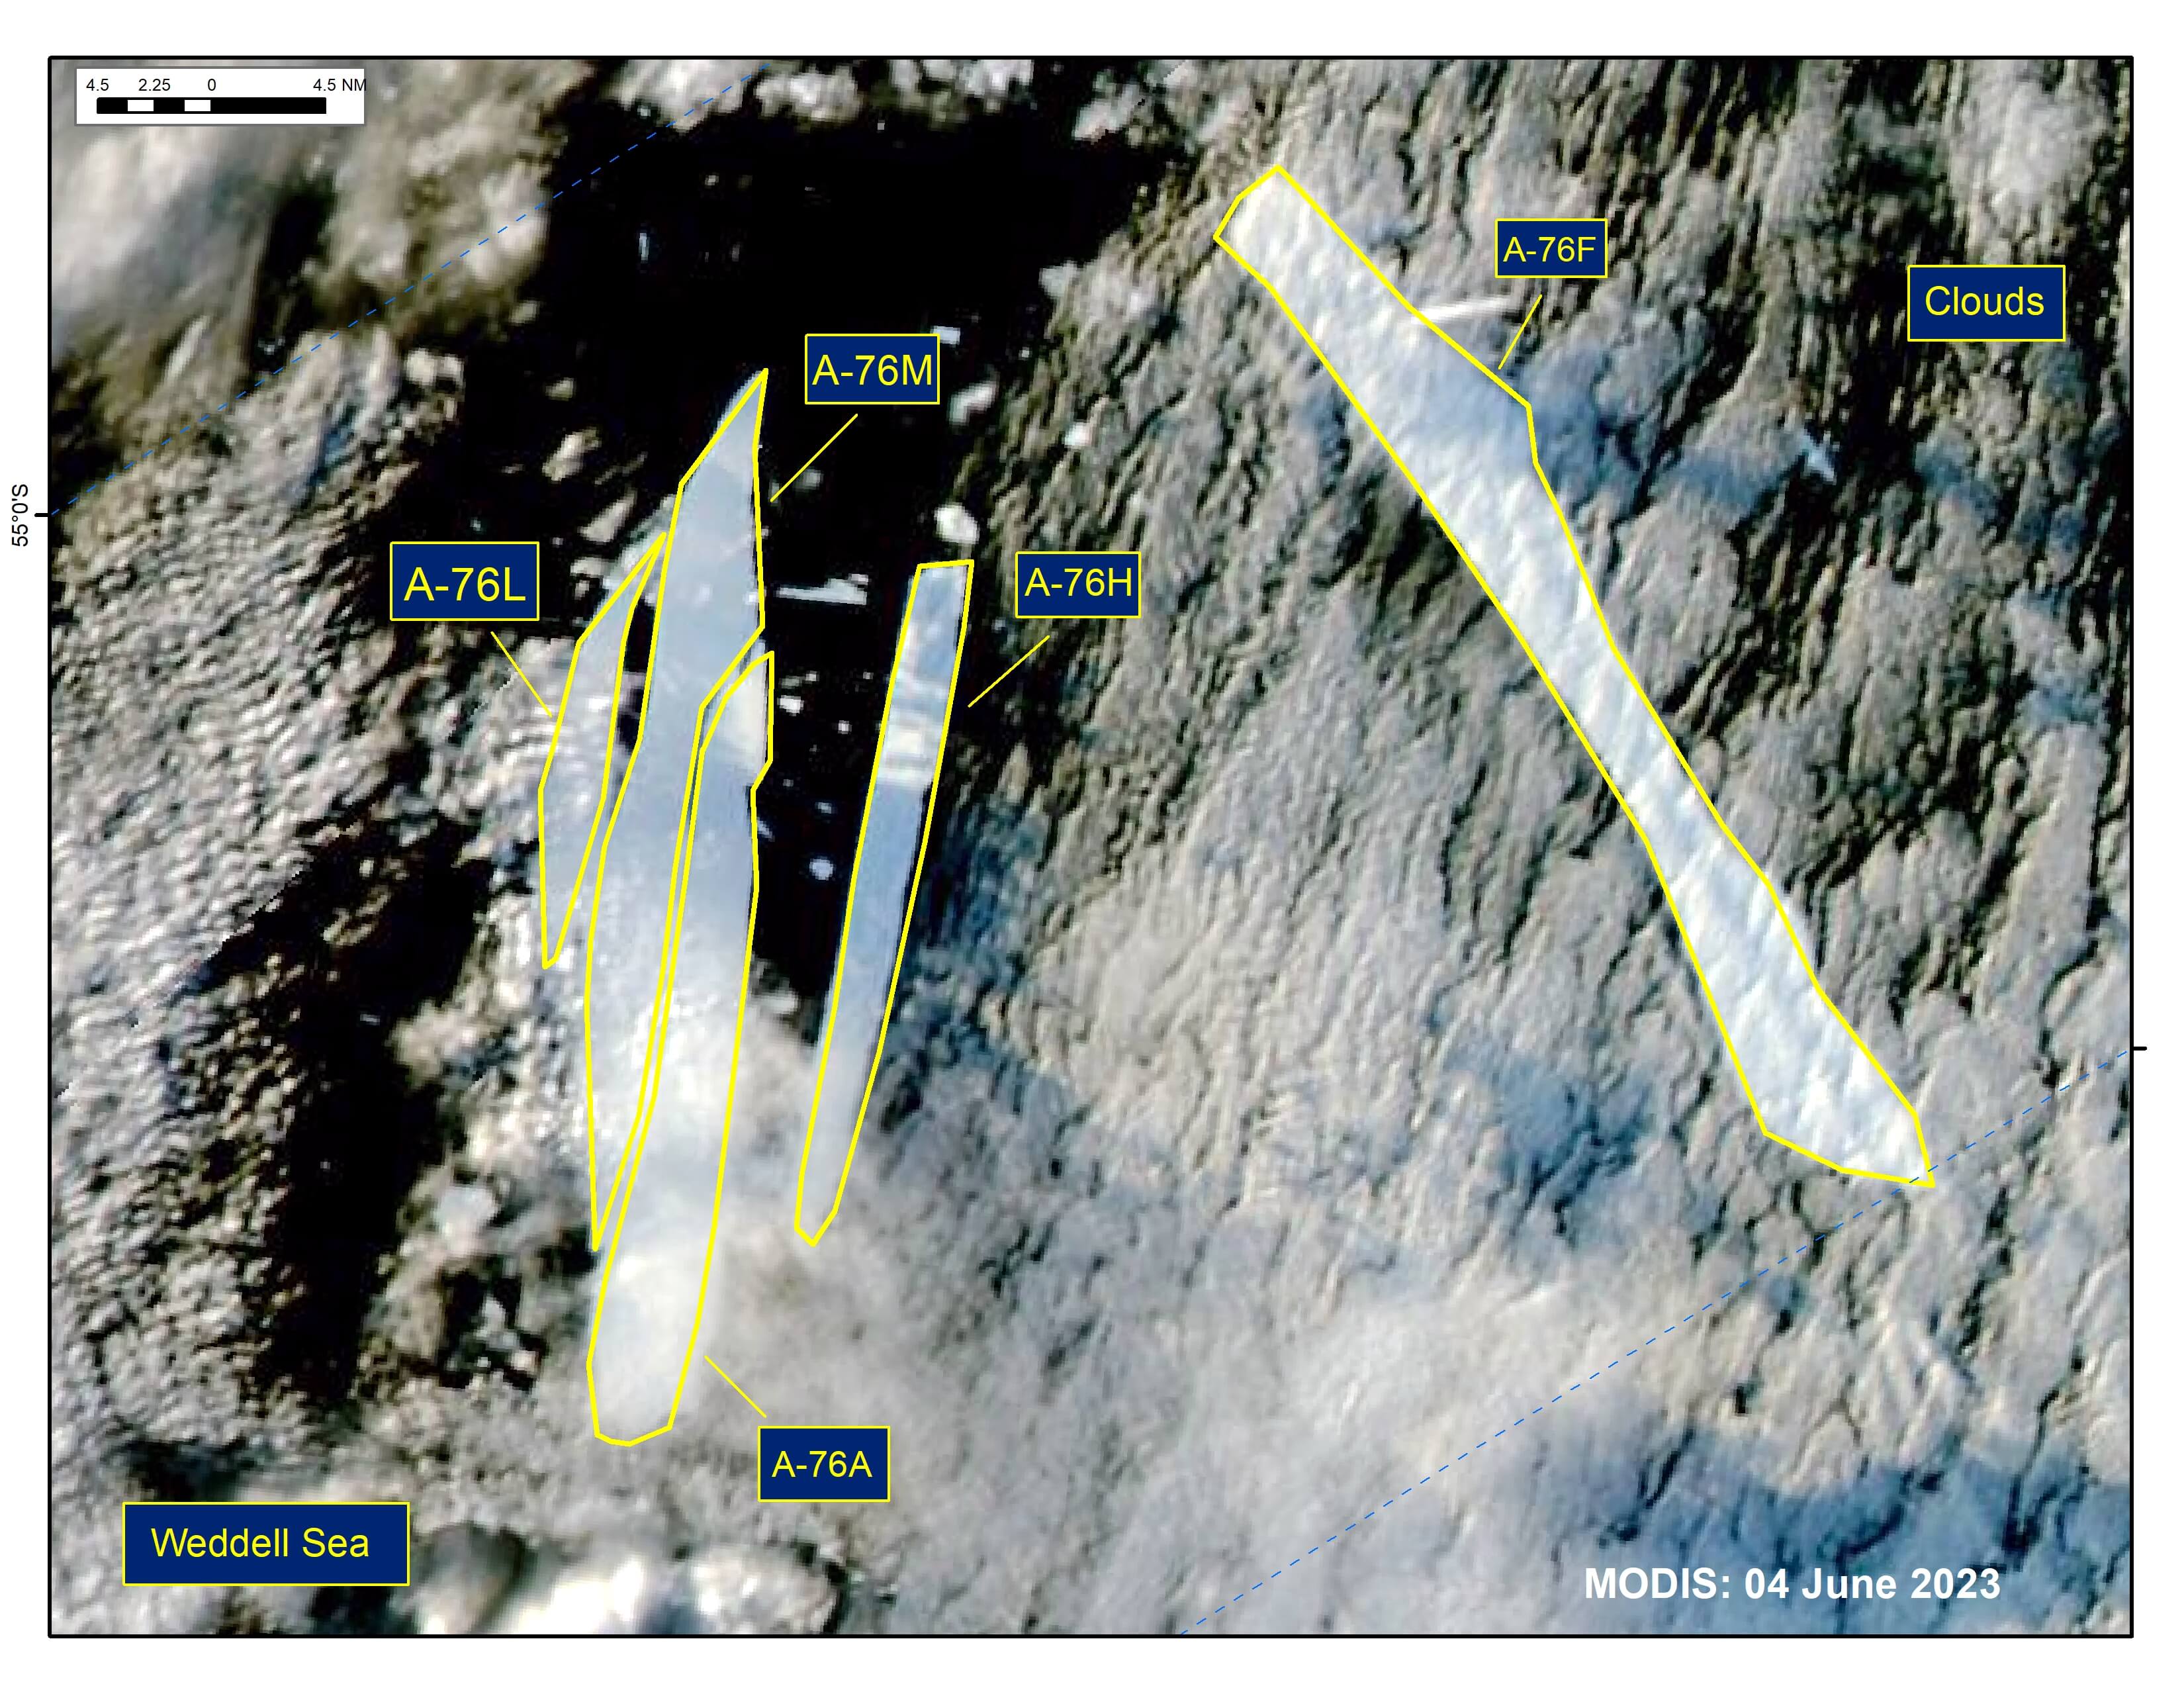 MODIS image of A-76A, A-76F, A-76H, A-76L, and A-76M